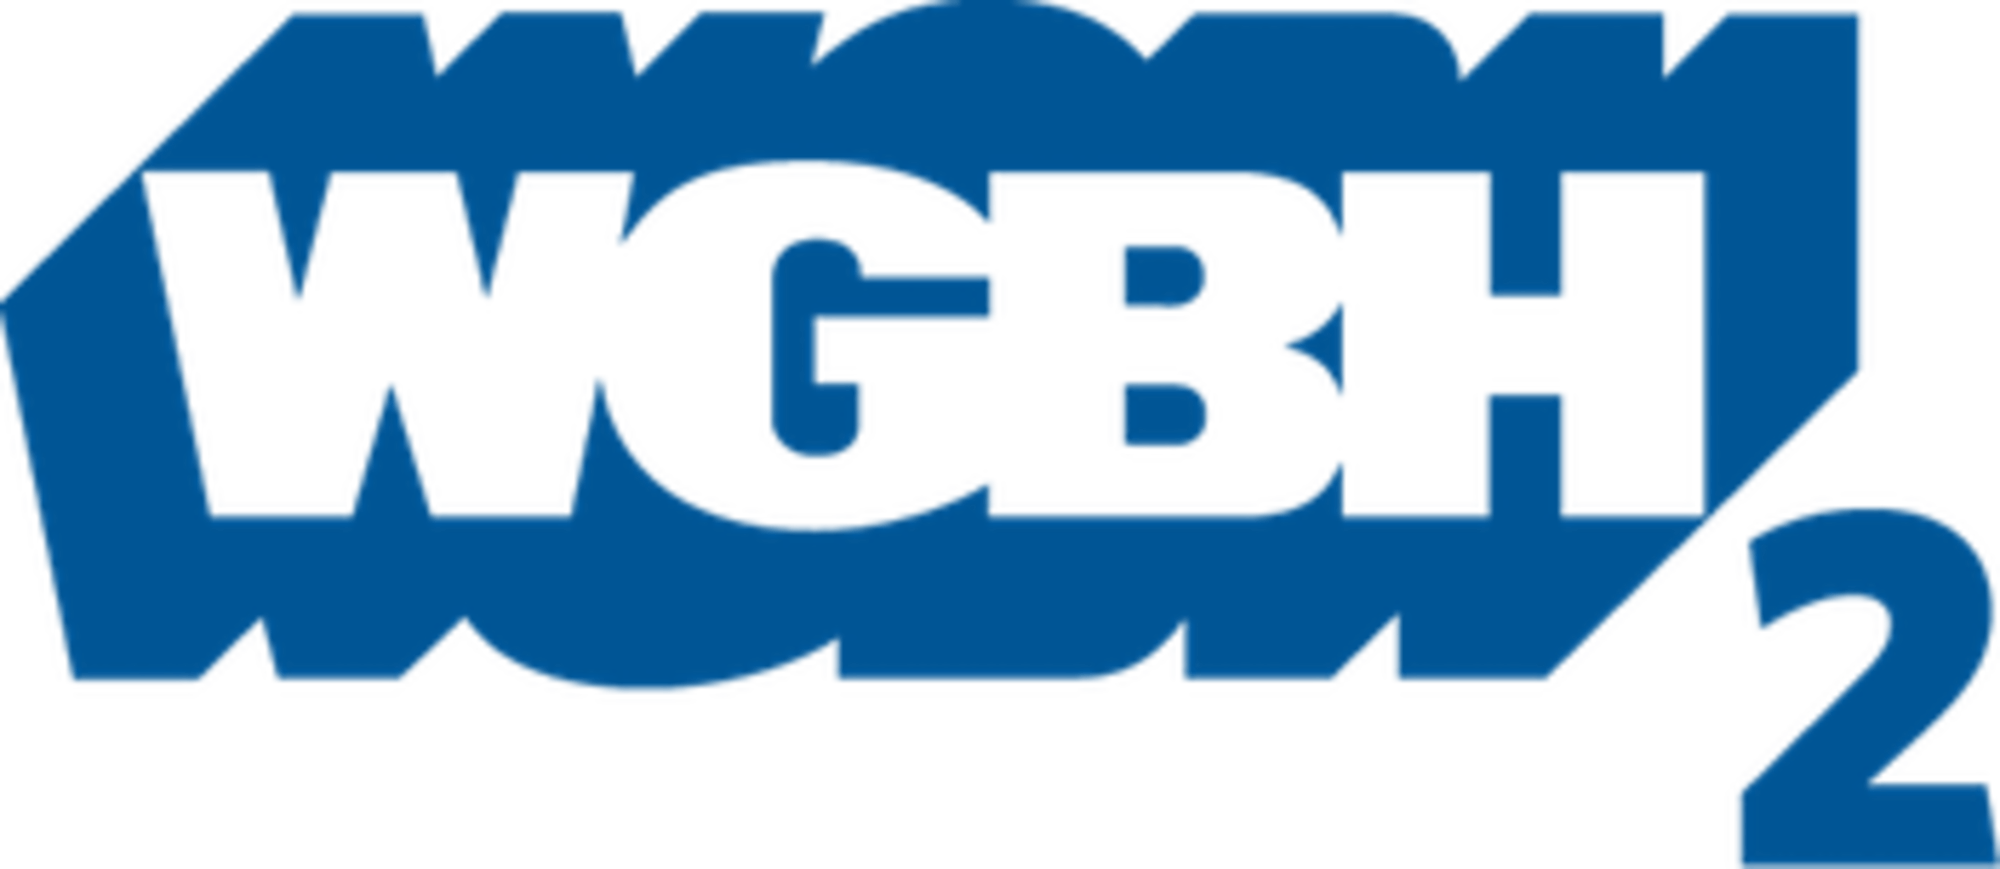 WGBH Logo - WGBH-TV/Other | Logopedia | FANDOM powered by Wikia